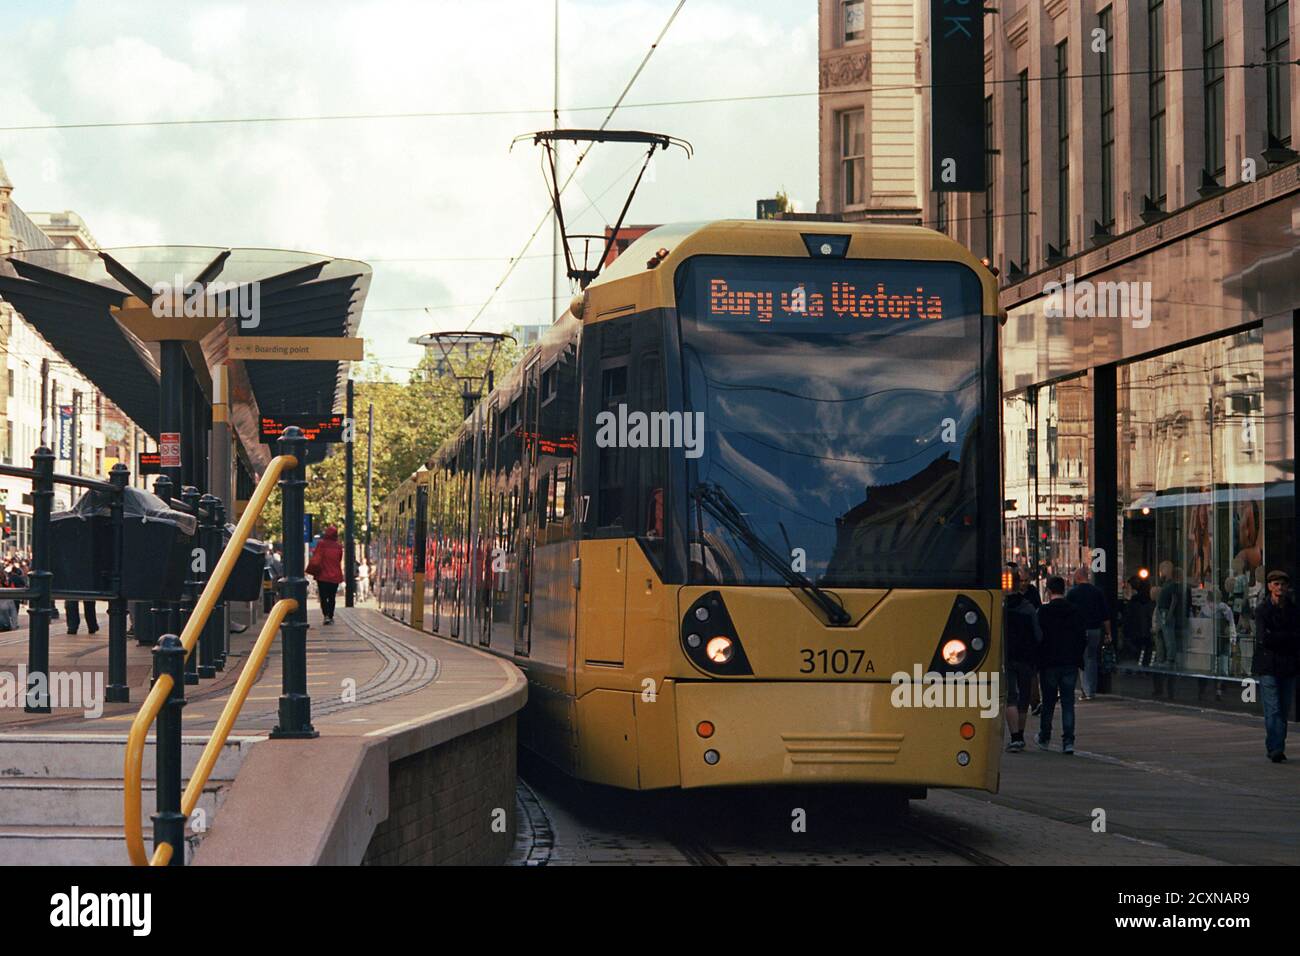 Manchester, Royaume-Uni - 12 septembre 2020 : un tramway Metrolink à l'arrêt Market Street en direction de Bury. Banque D'Images